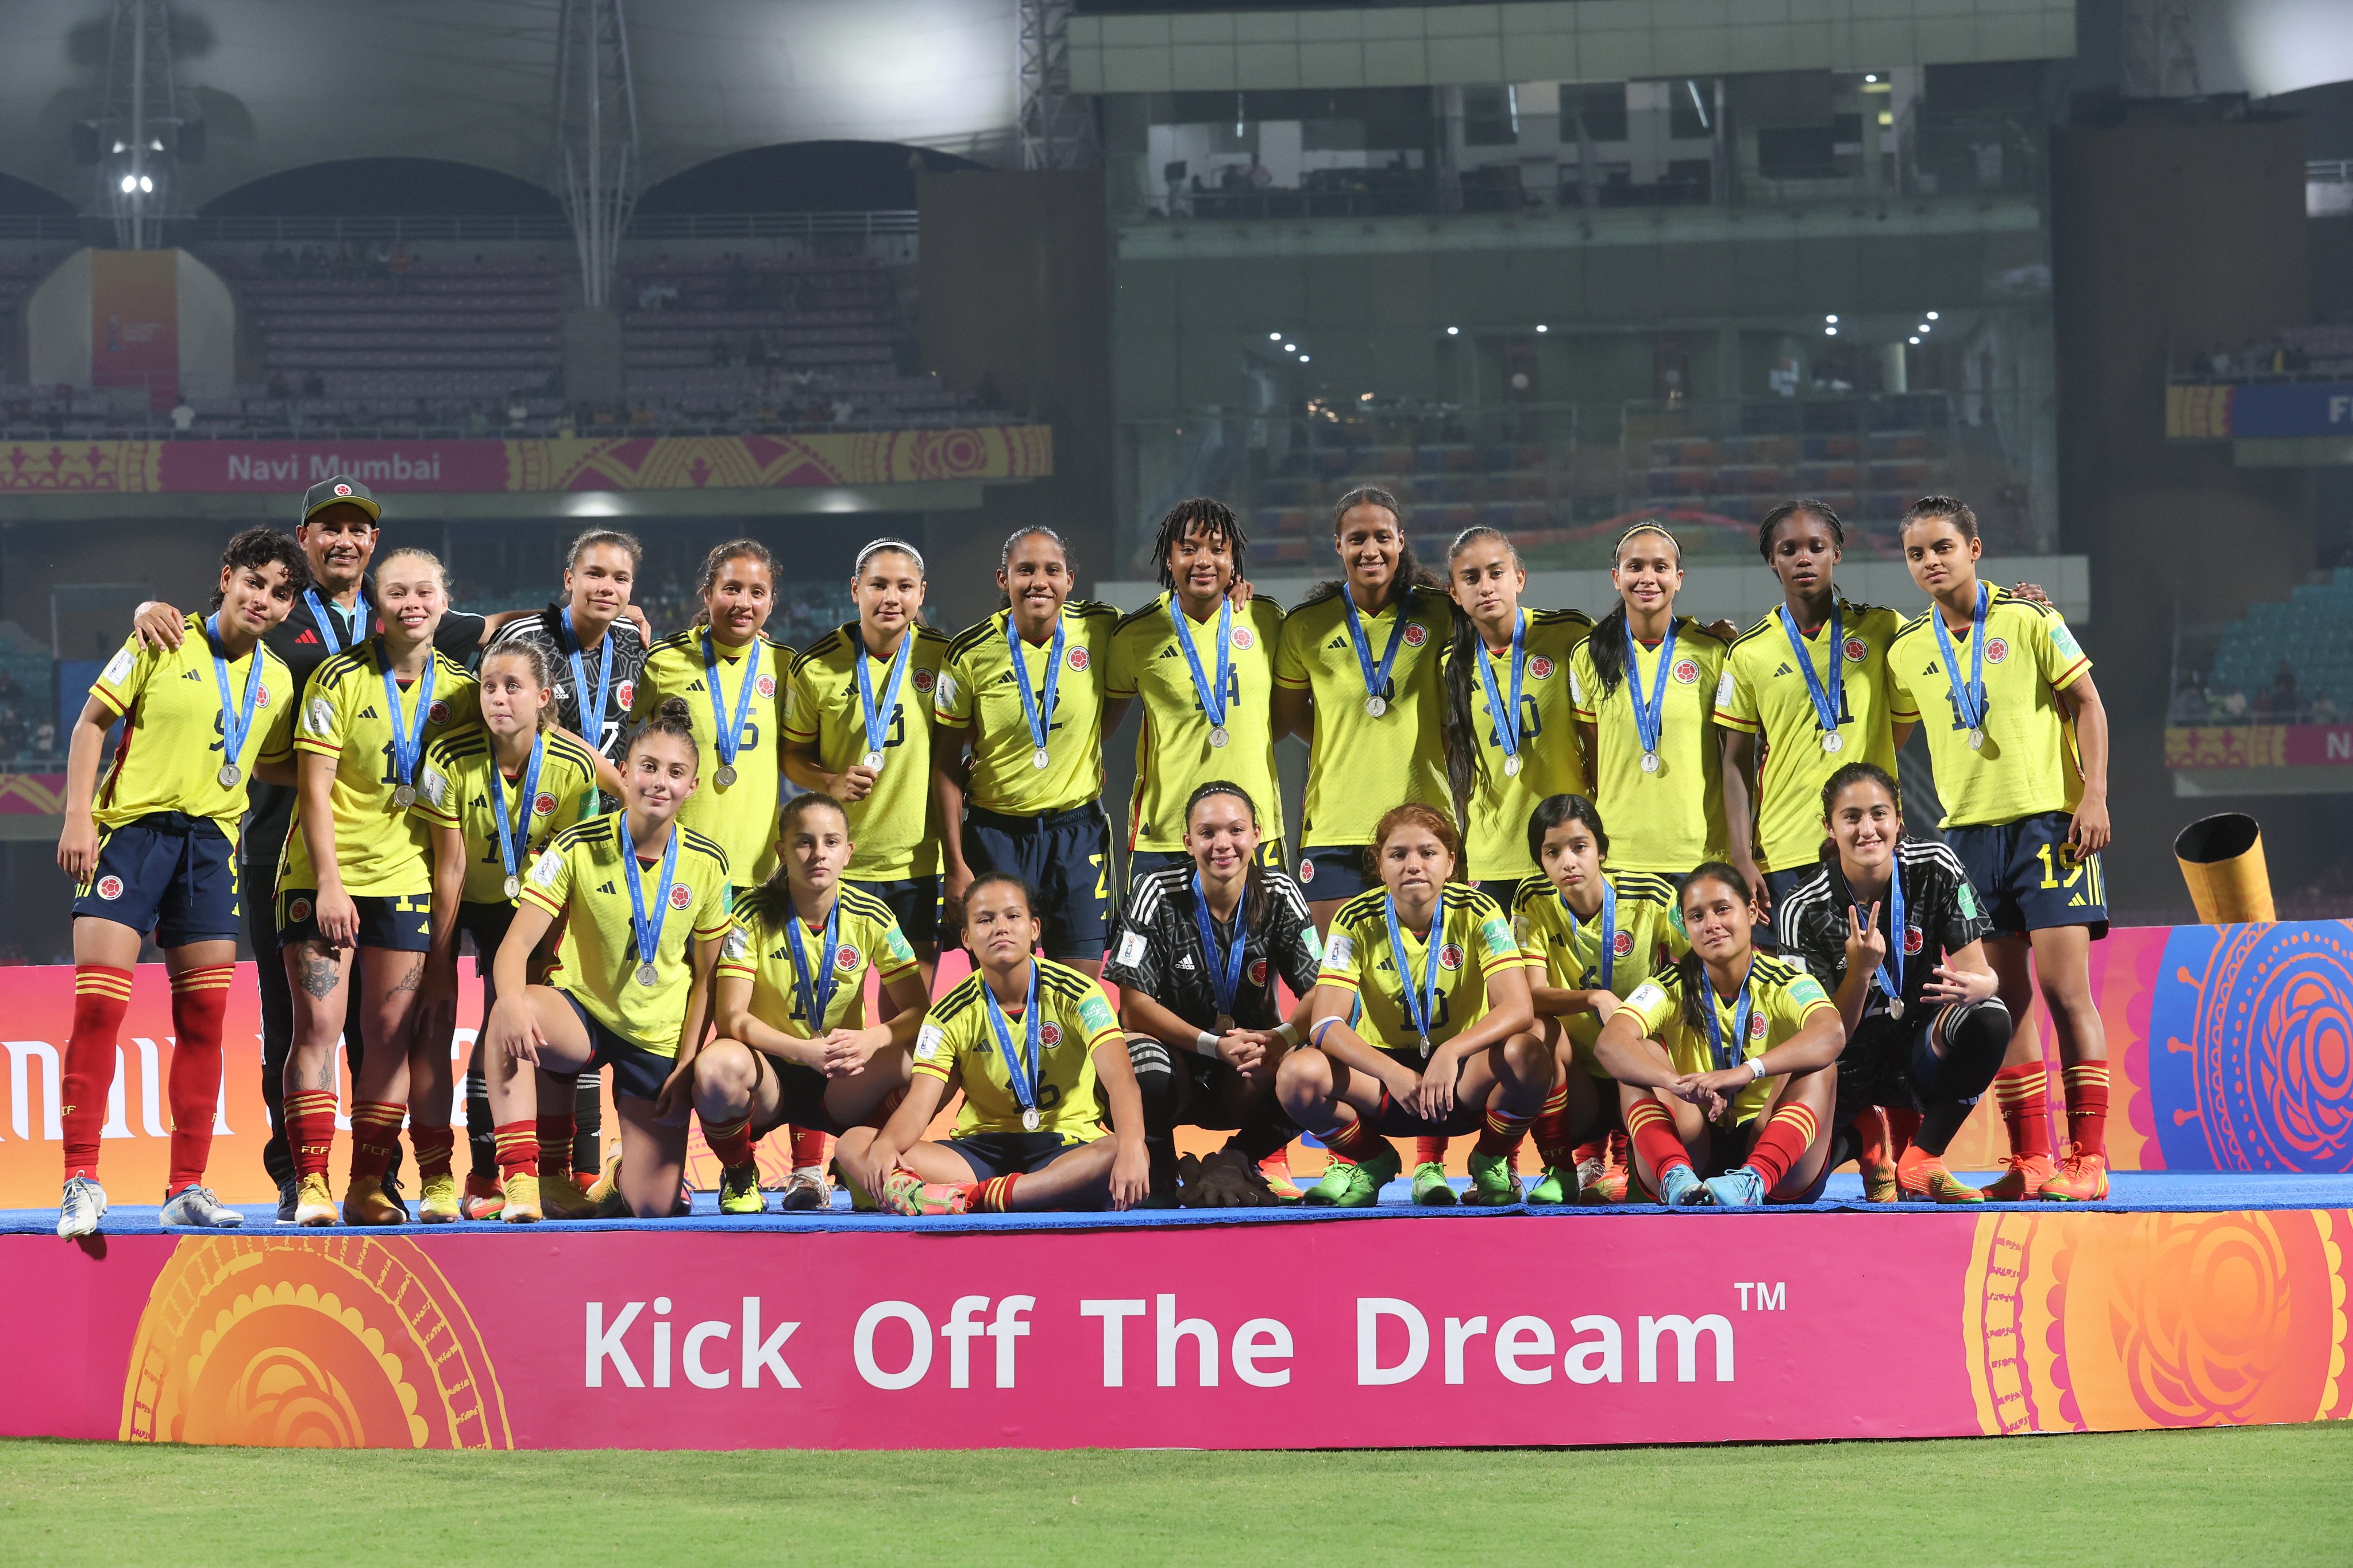 La selección Colombia Femenina se quedó con el subcampeonato del mundo tras caer por la mínima diferencia ante el cuadro español por 1-0. Imagen: @FIFAWWC